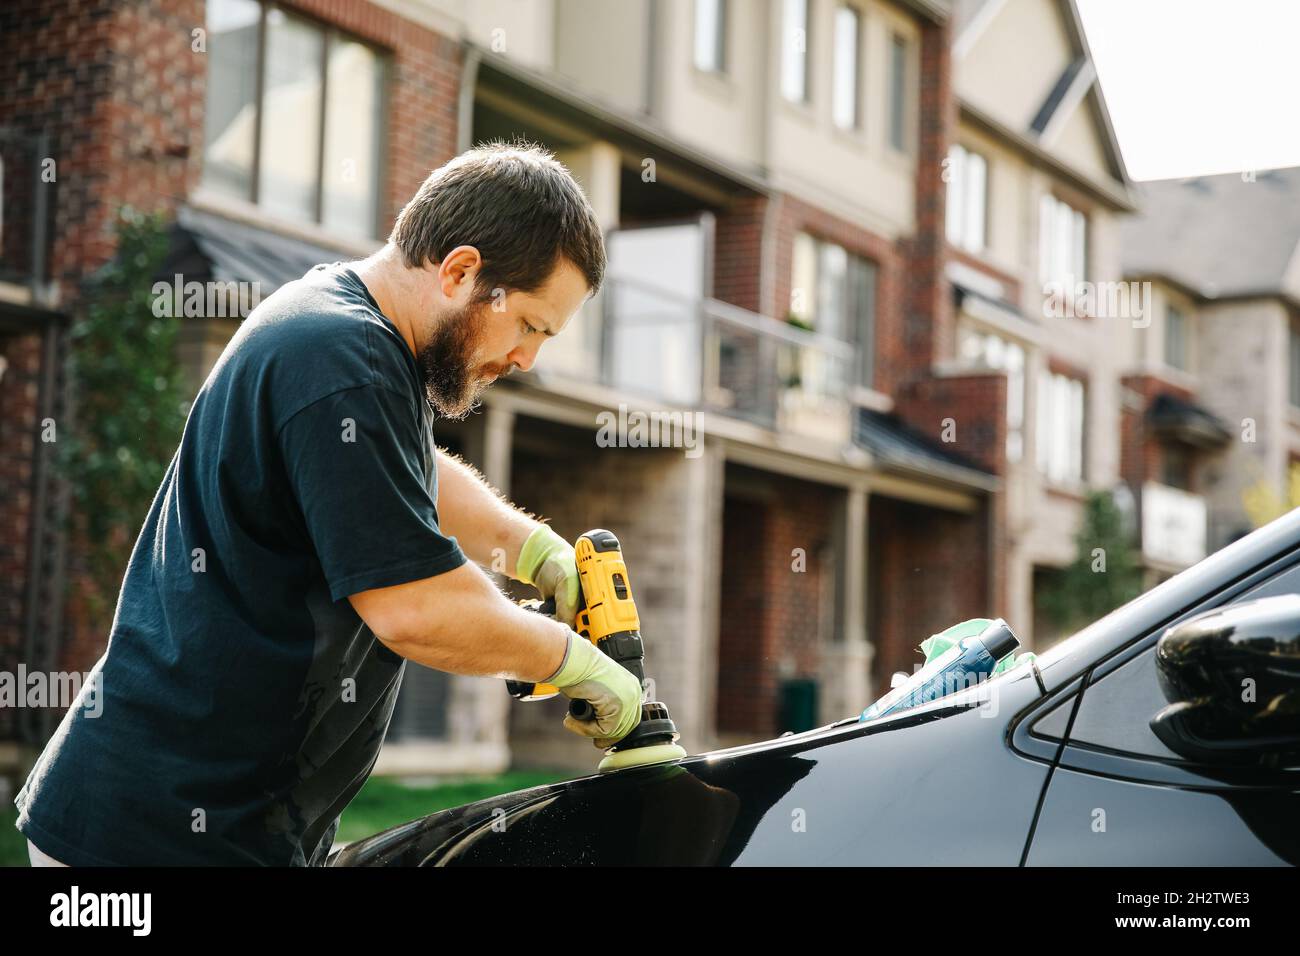 Auto service personnel canadien homme nettoyant voiture et polissage Banque D'Images